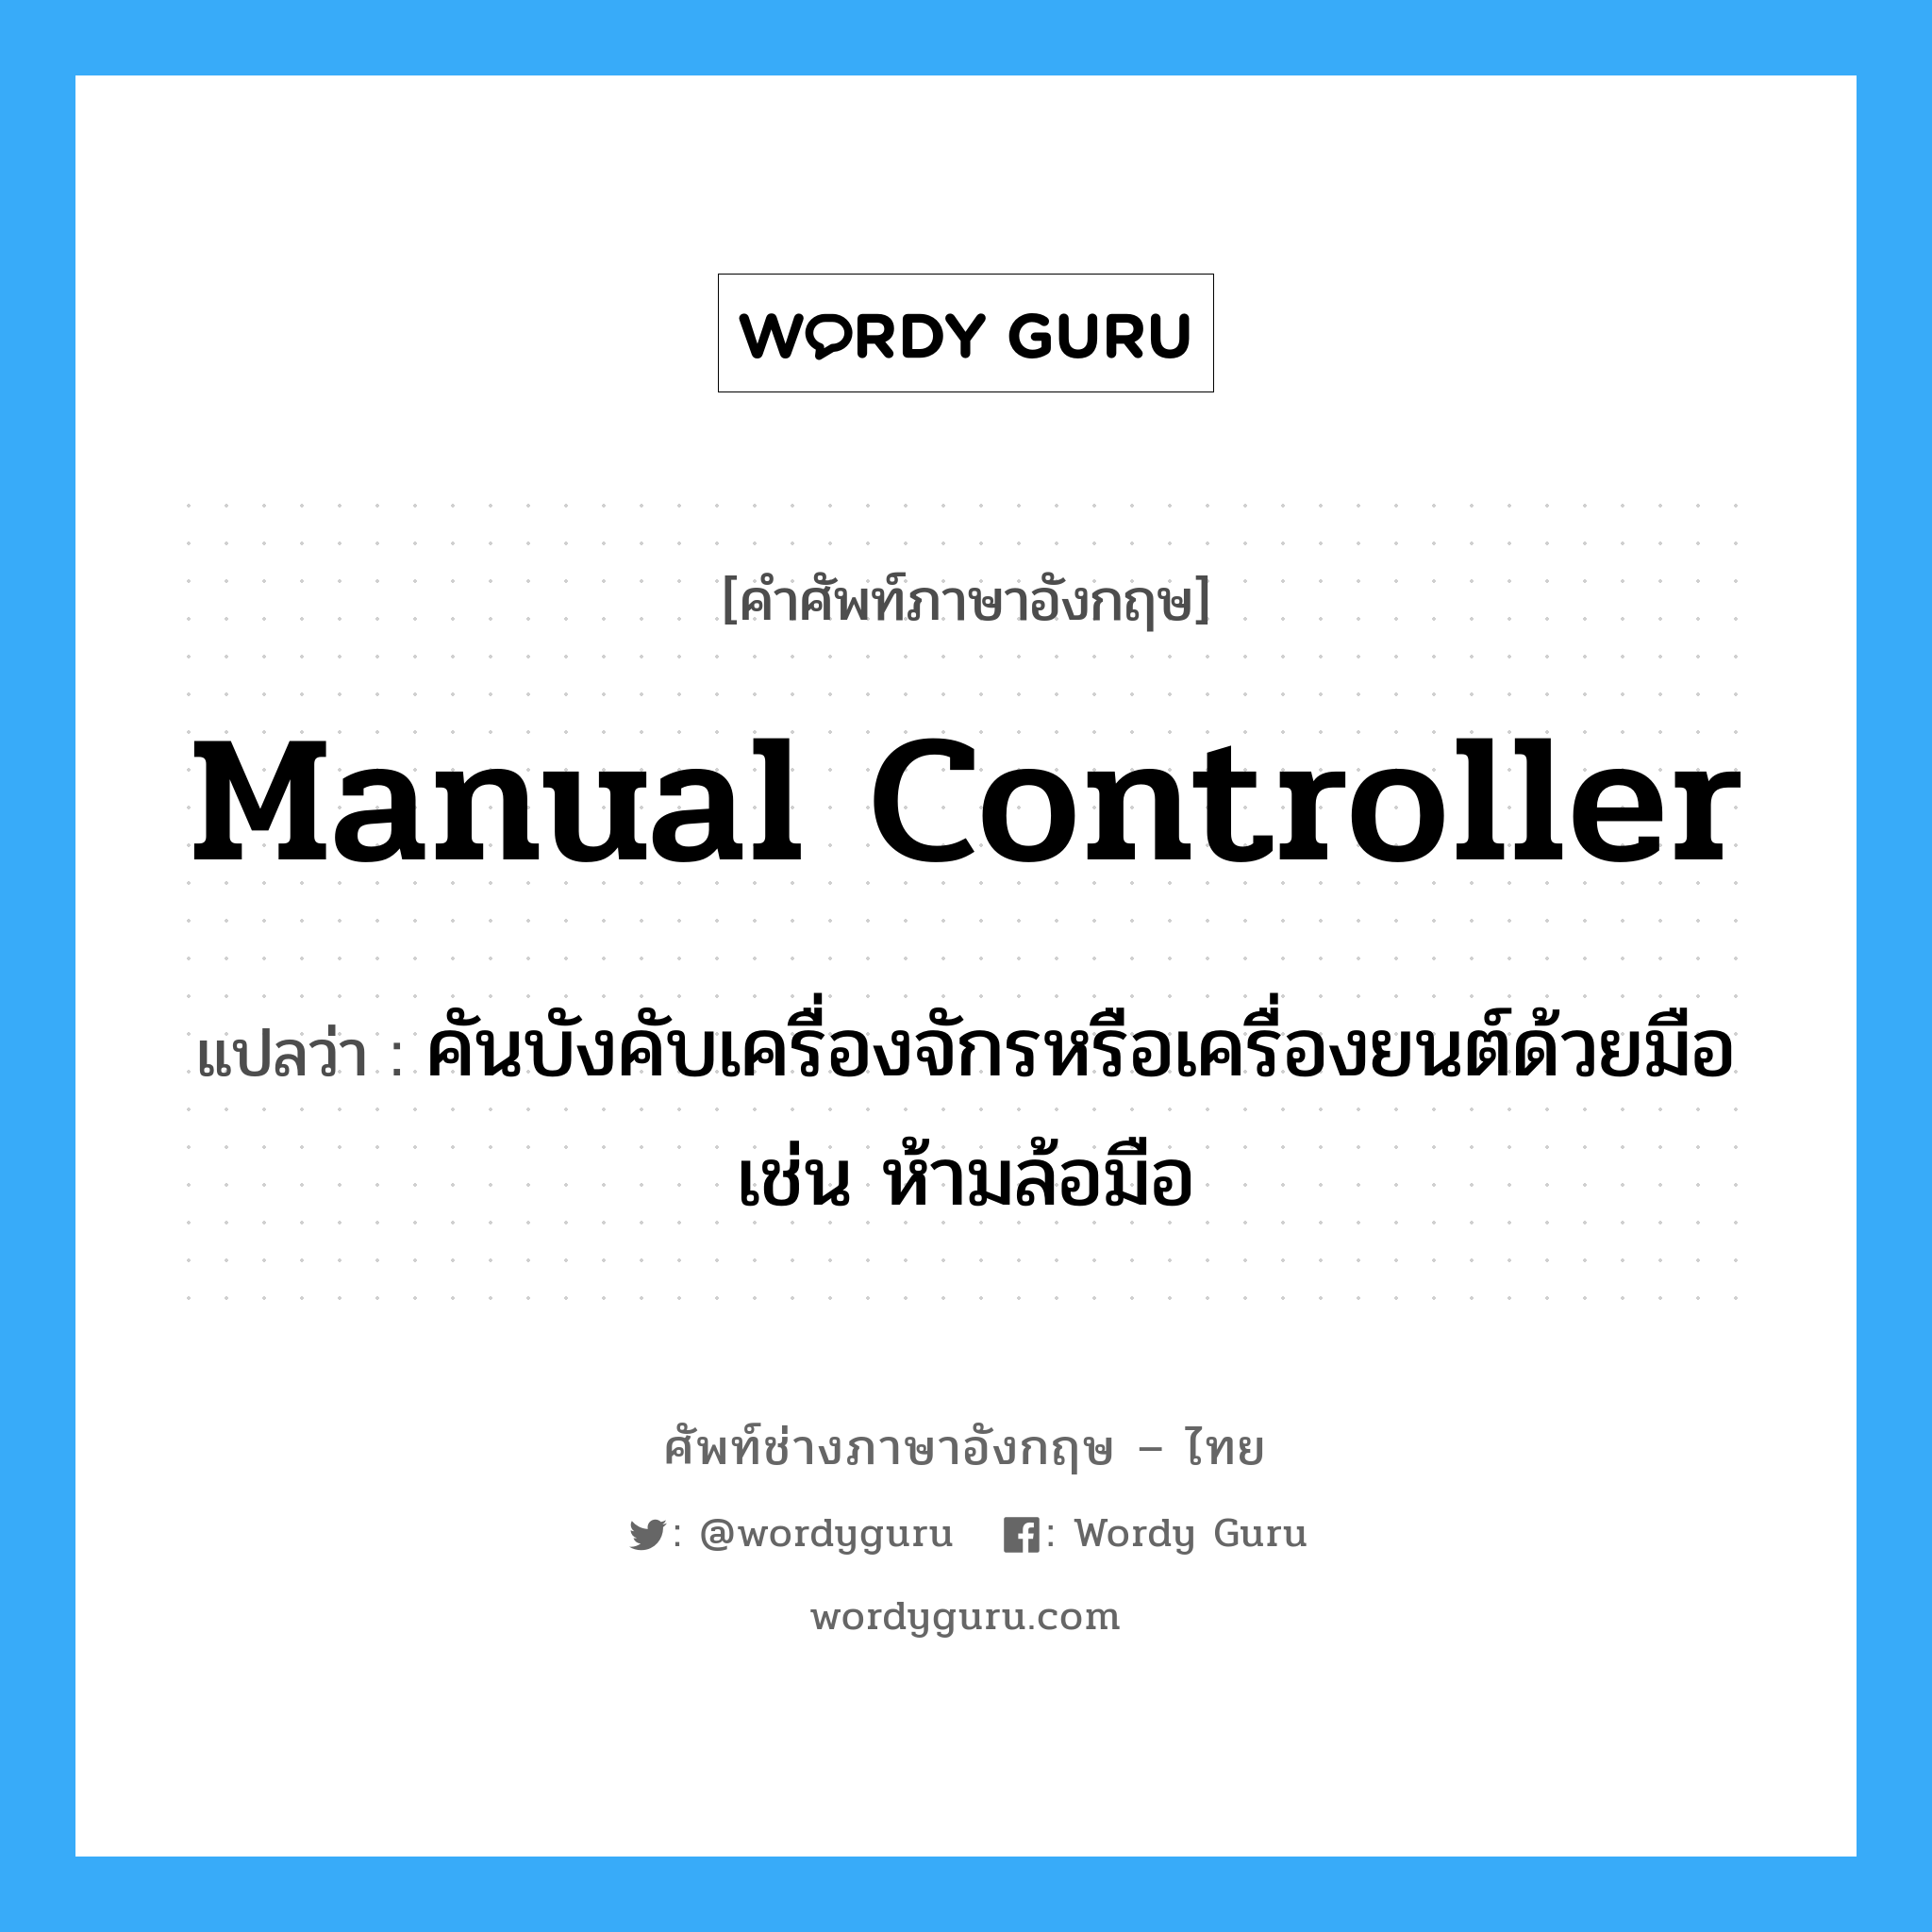 manual controller แปลว่า?, คำศัพท์ช่างภาษาอังกฤษ - ไทย manual controller คำศัพท์ภาษาอังกฤษ manual controller แปลว่า คันบังคับเครื่องจักรหรือเครื่องยนต์ด้วยมือ เช่น ห้ามล้อมือ